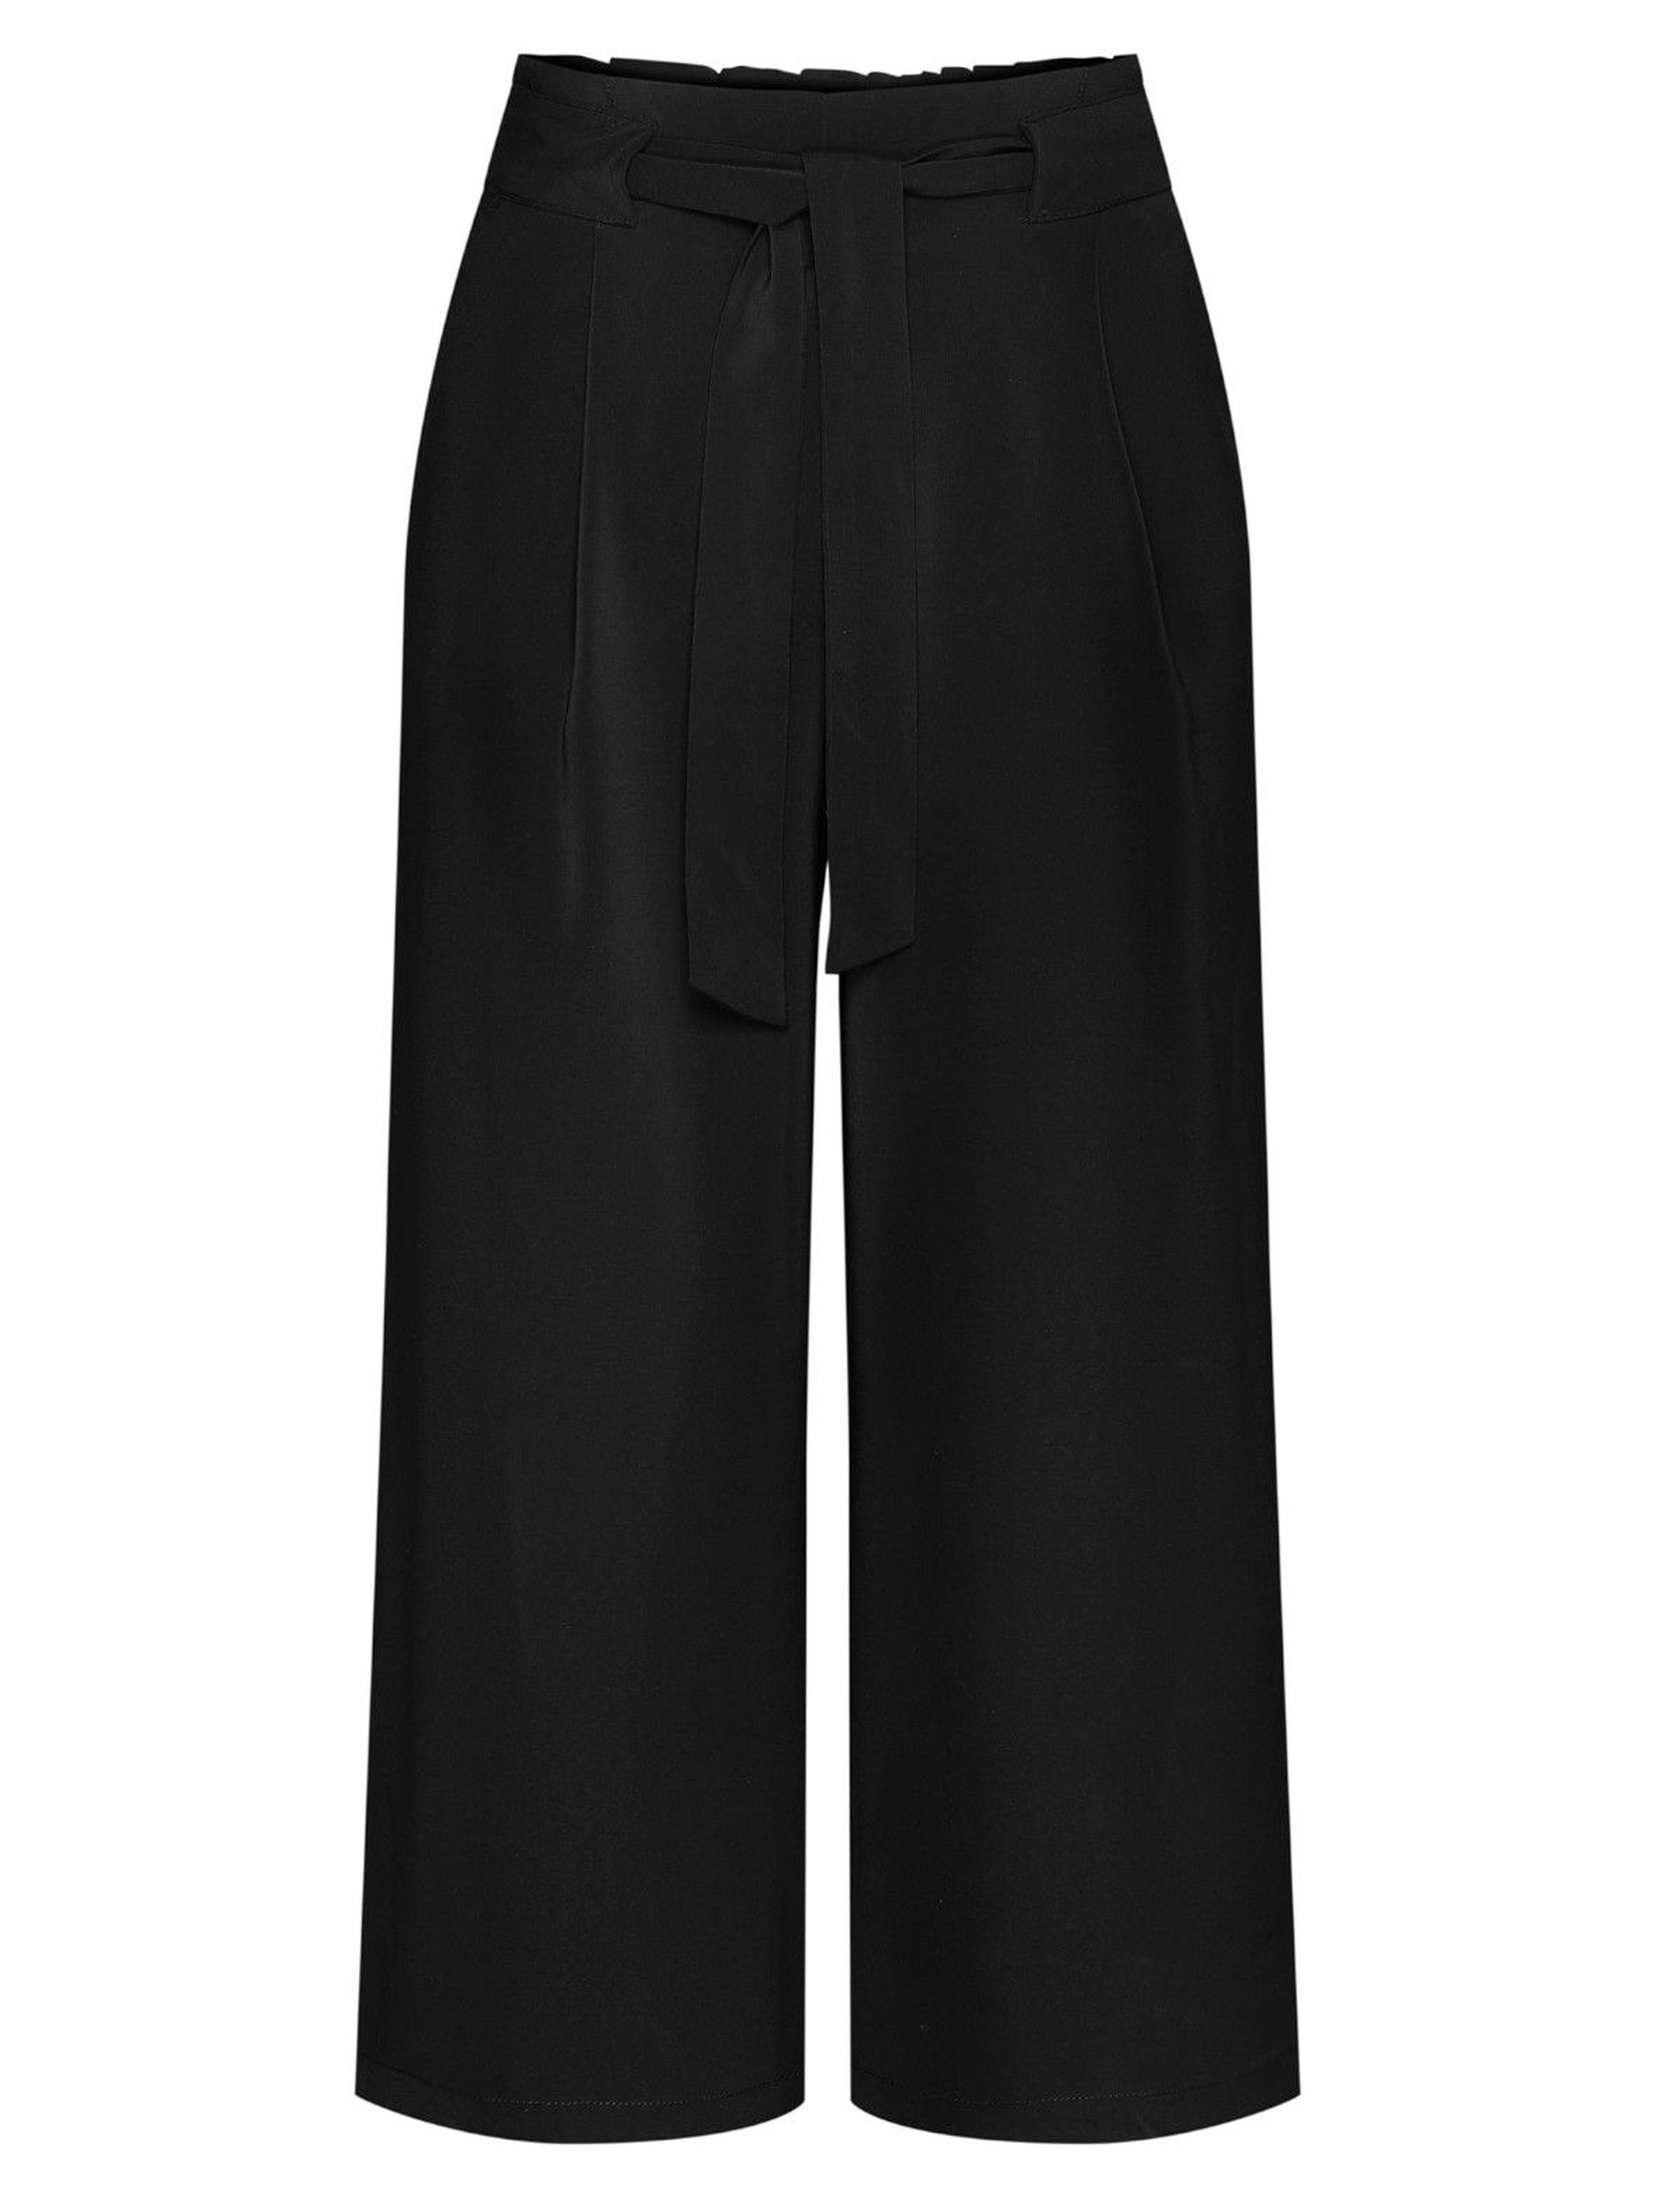 Czarne spodnie damskie z paskiem typu kulot